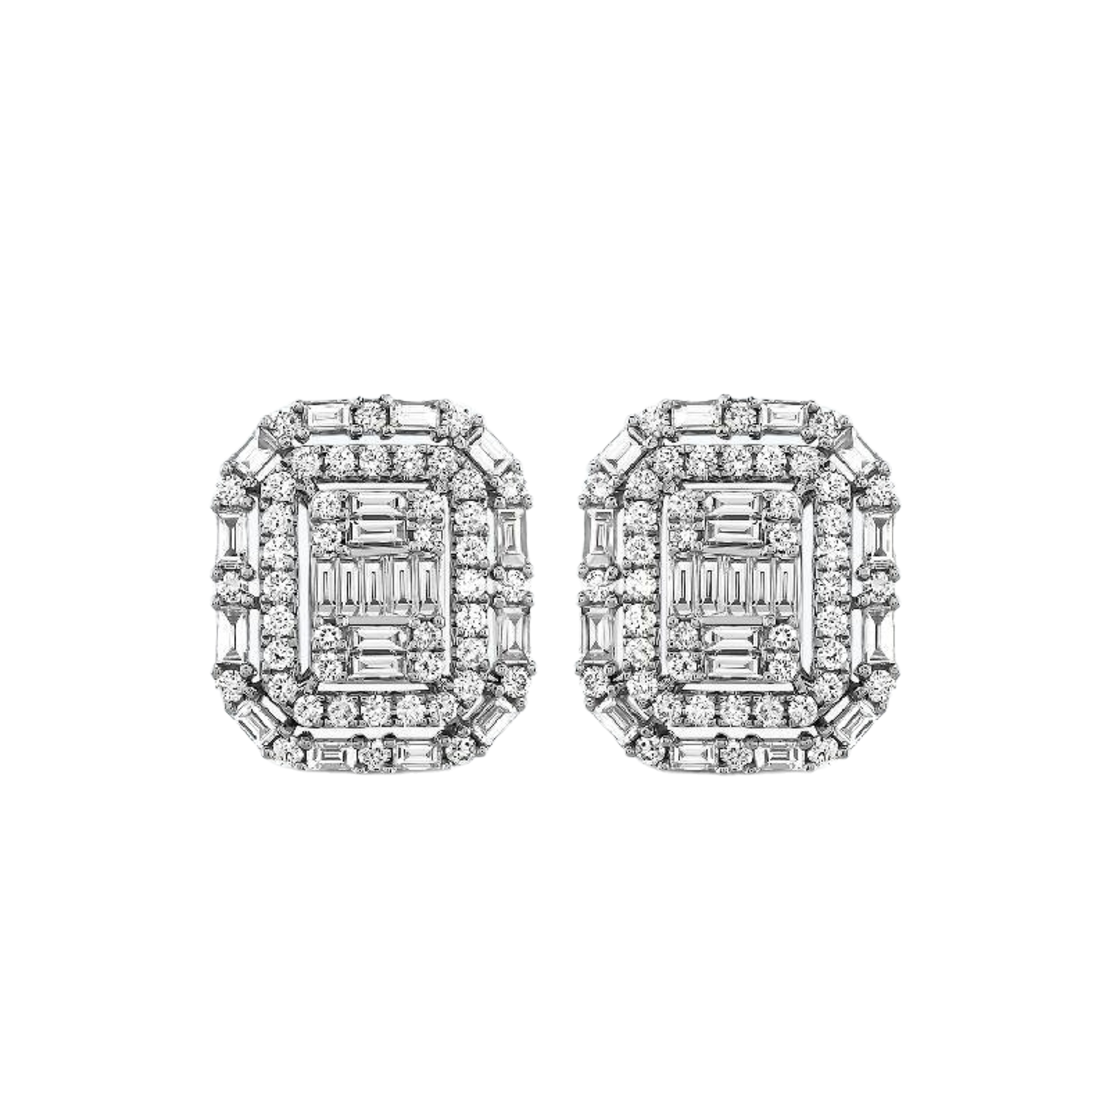 1.54 k Diamond earrings